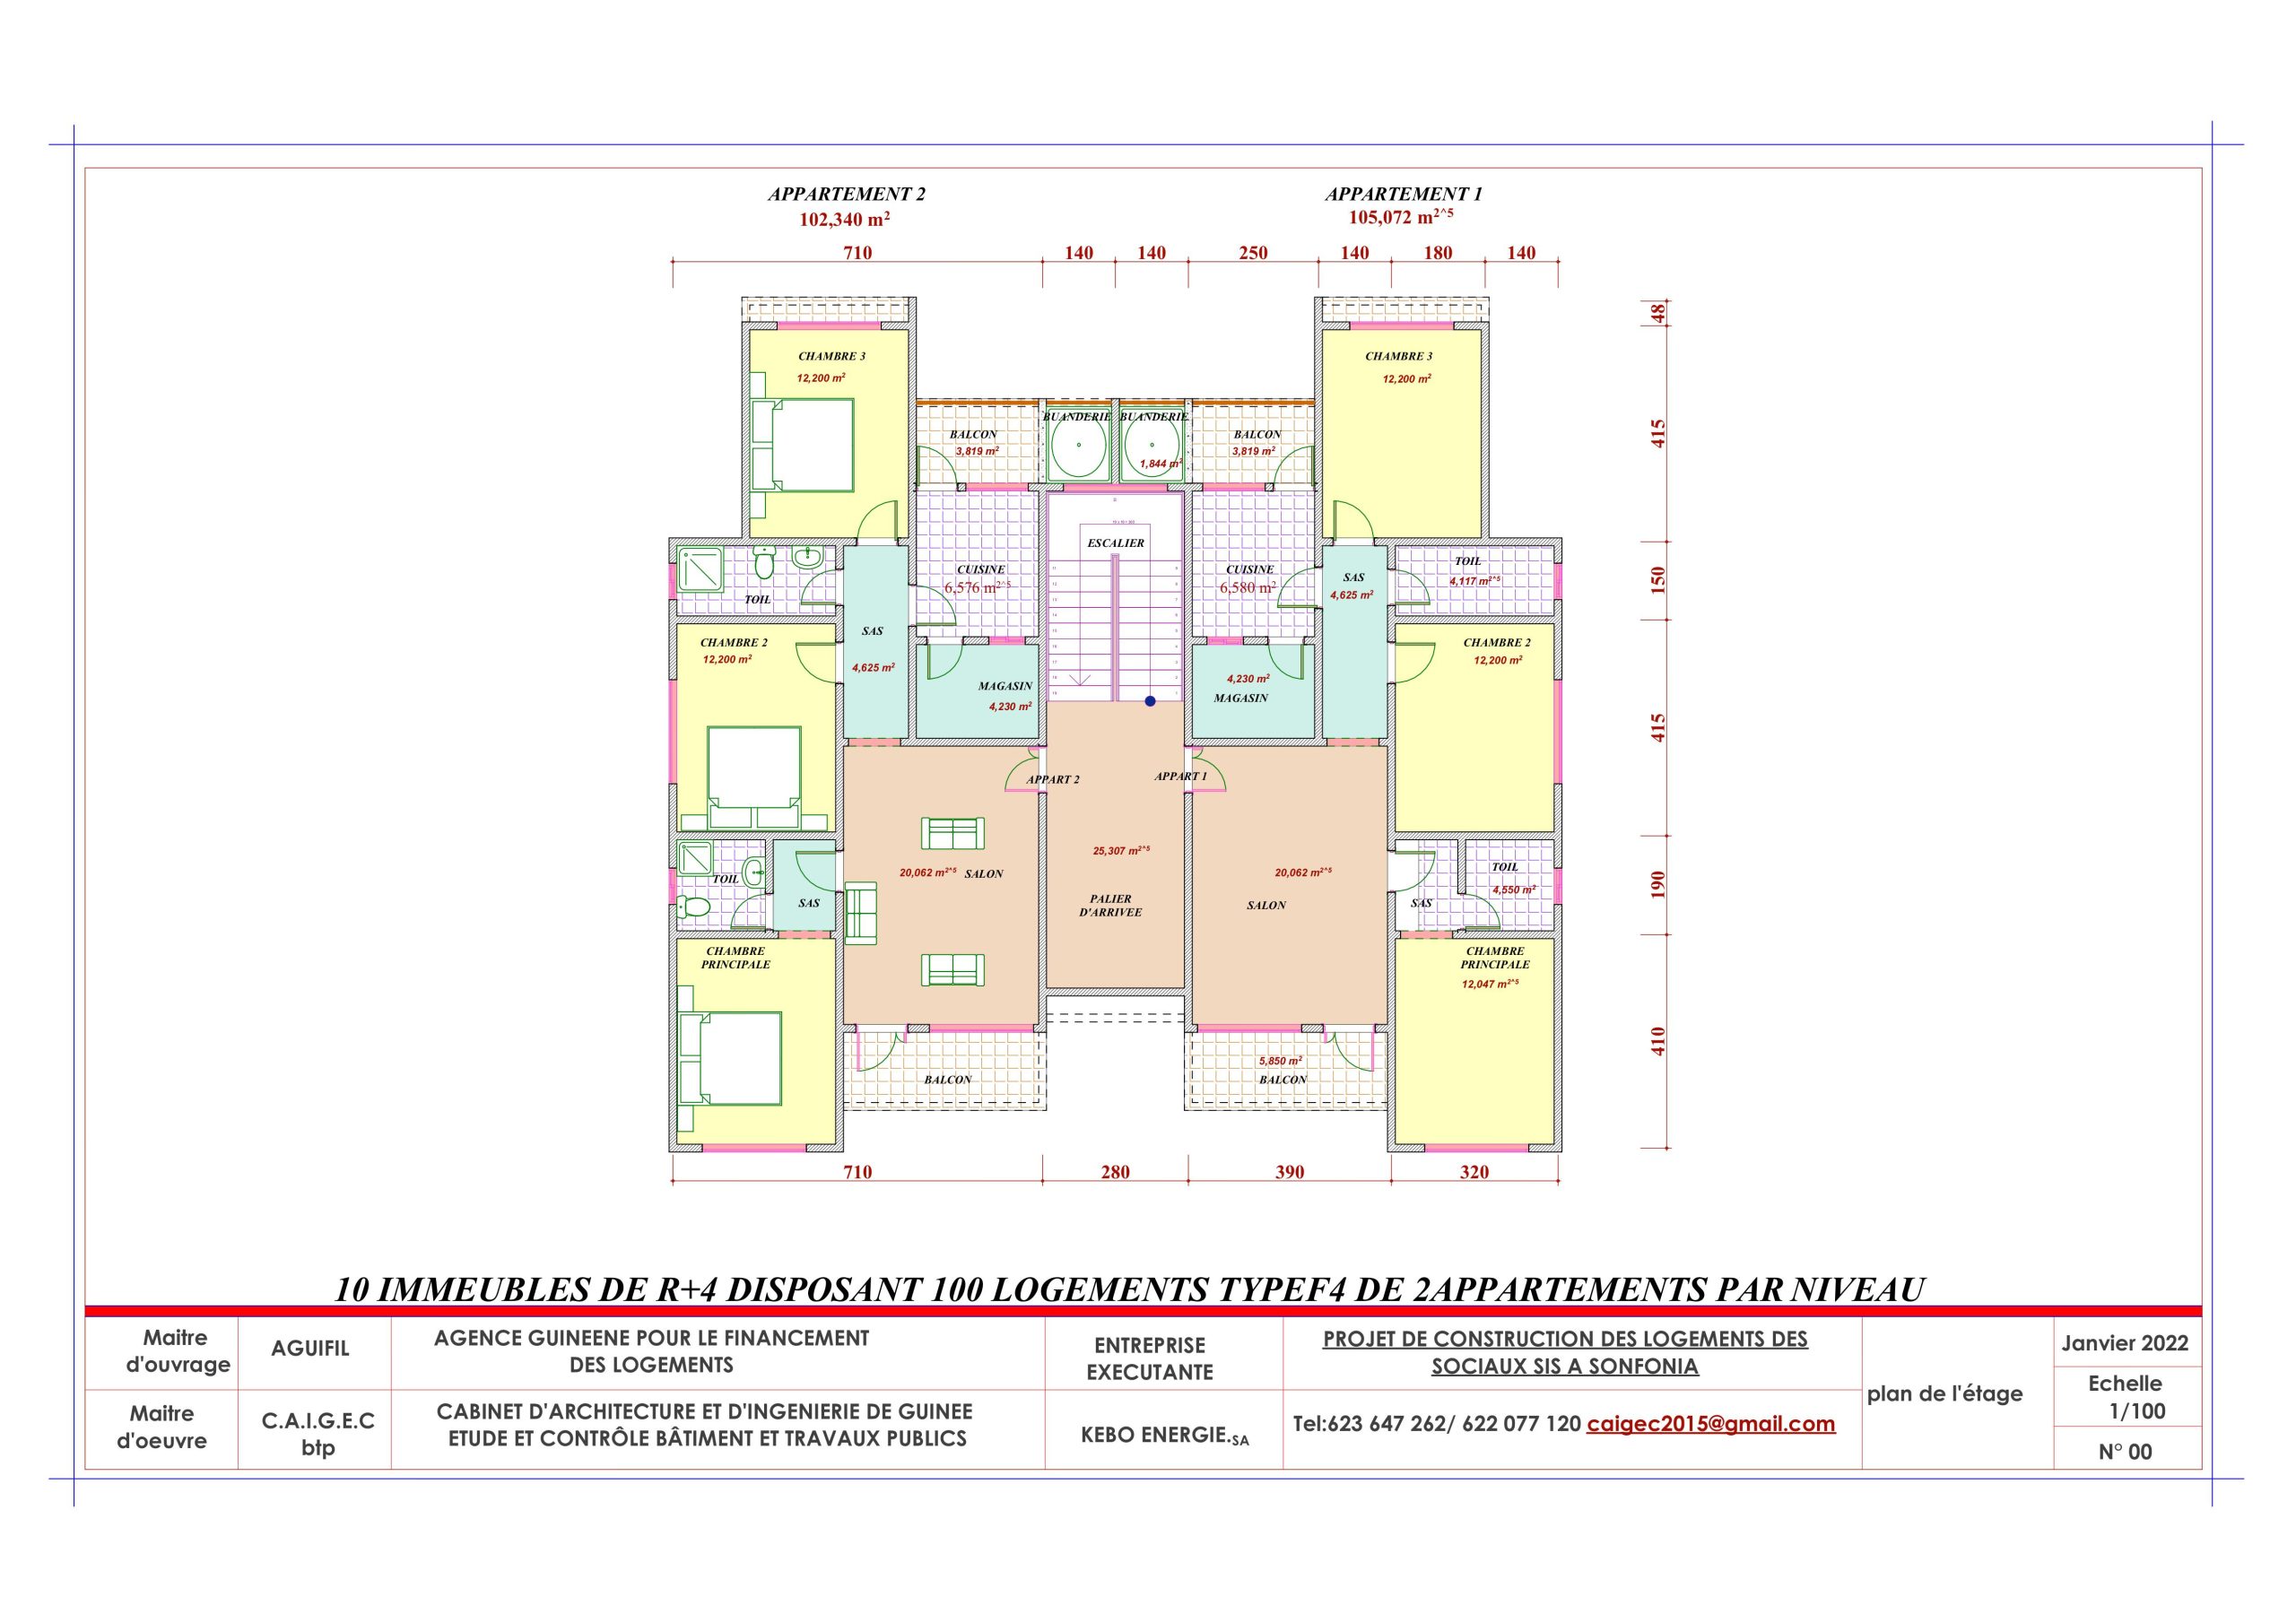 Plan  Appartement F4